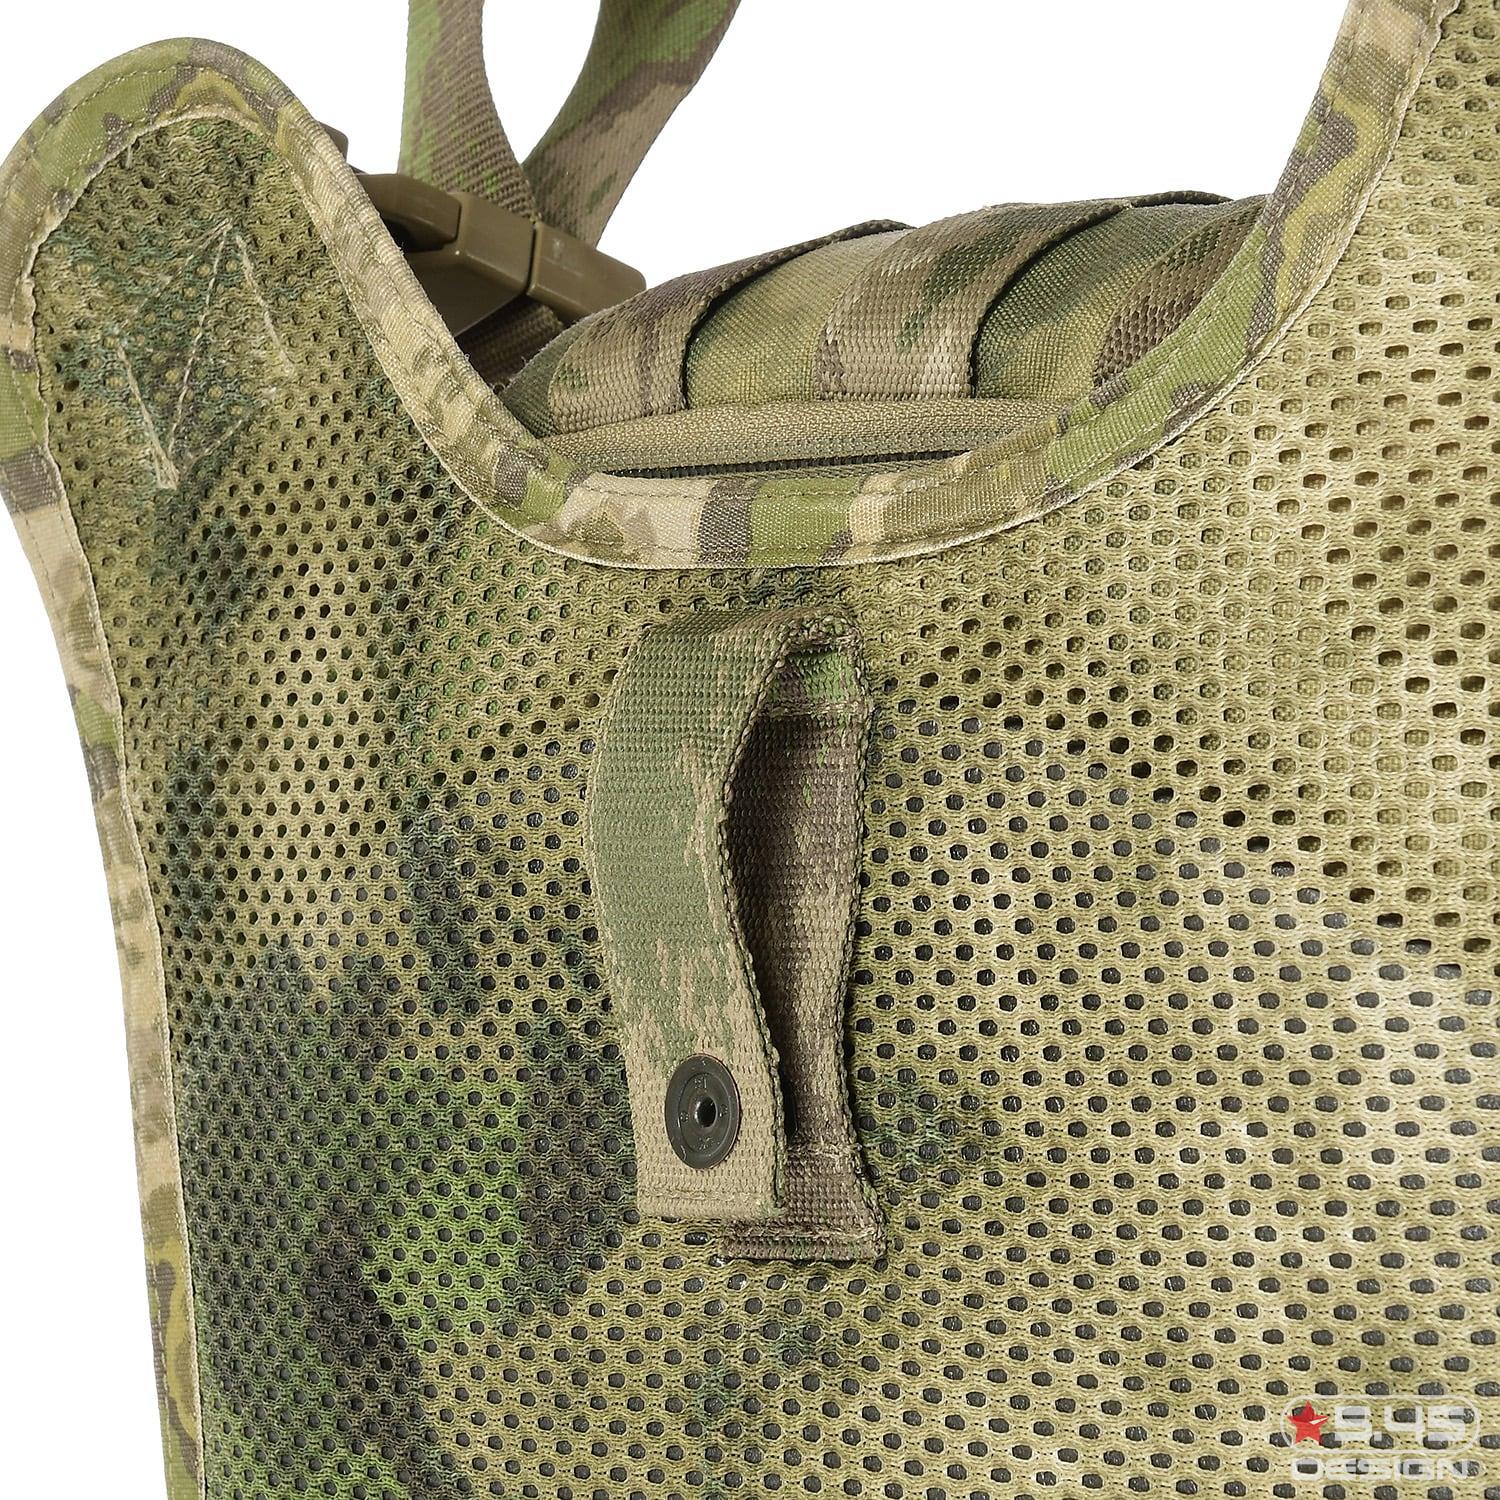 С внутренней стороны сумки установлена Air Mesh ткань, которая обеспечивает вентиляцию и одновременно исключает натирание содержимым сумки